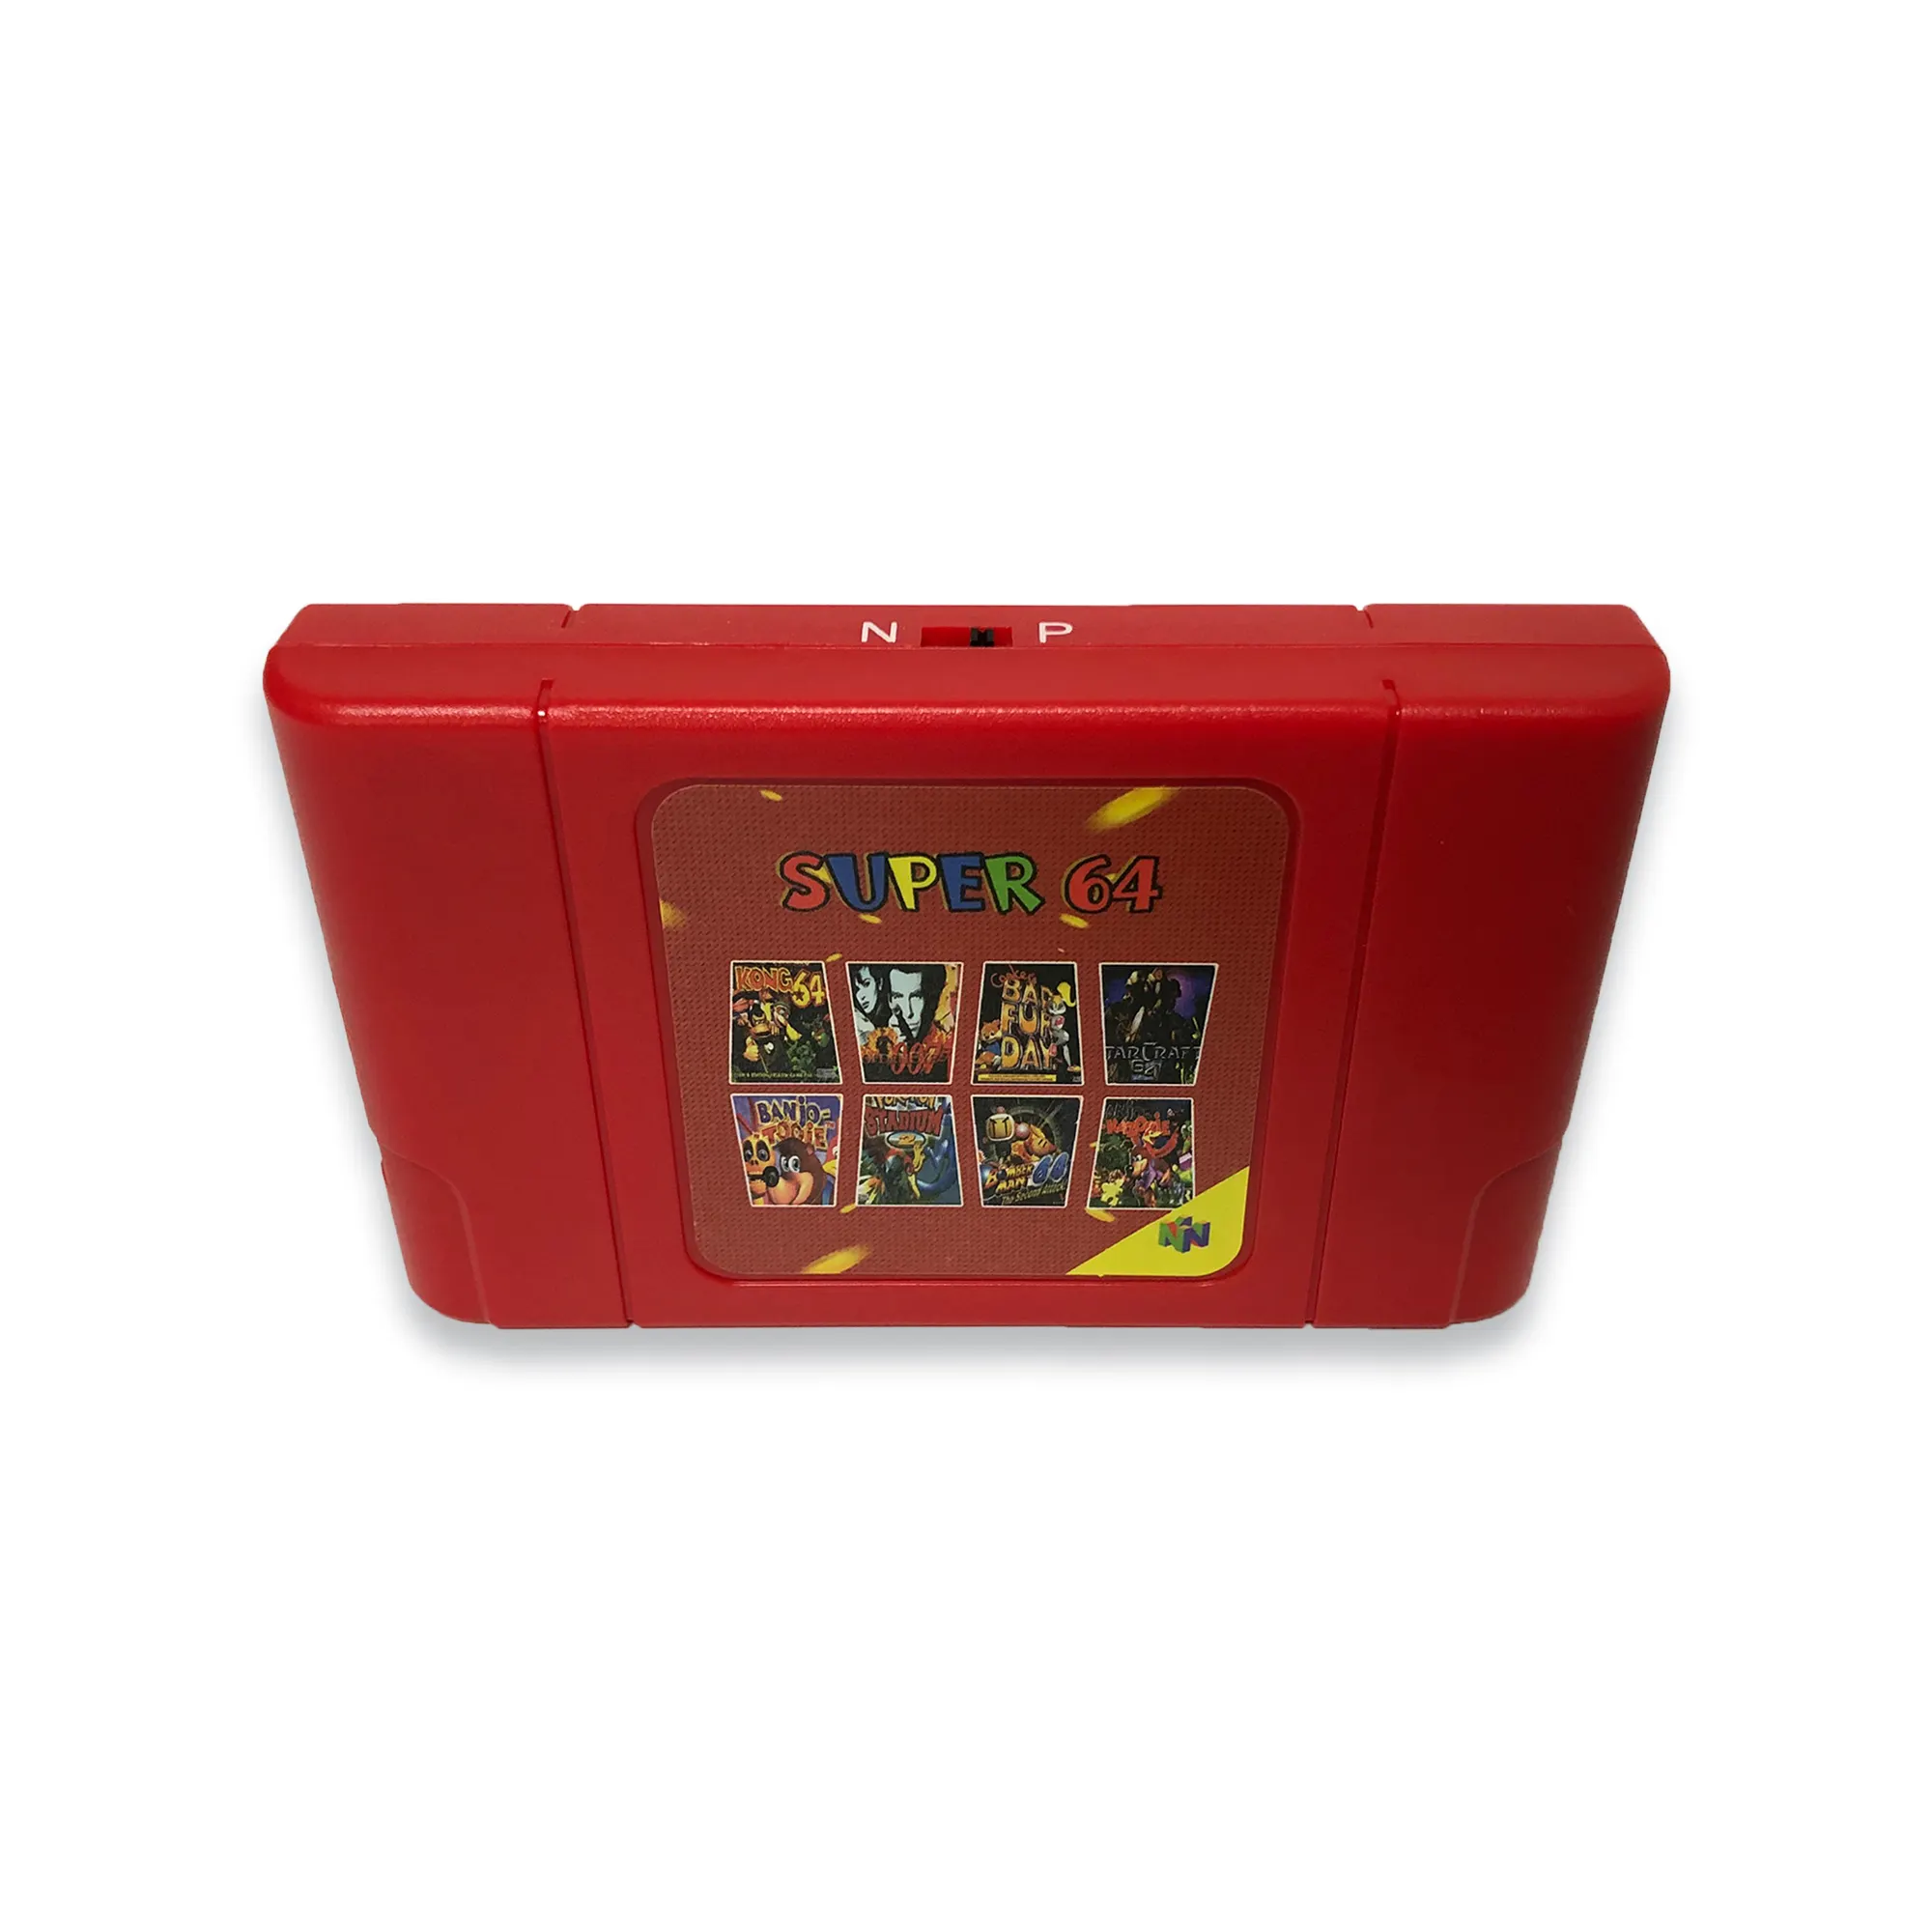 Super 64 DIY 340 dalam 1 Cartridge Game untuk N64 konsol Video Game mendukung NTSC & PAL Sistem Super Mario 64 Party 1 2 3 Zelda Quest